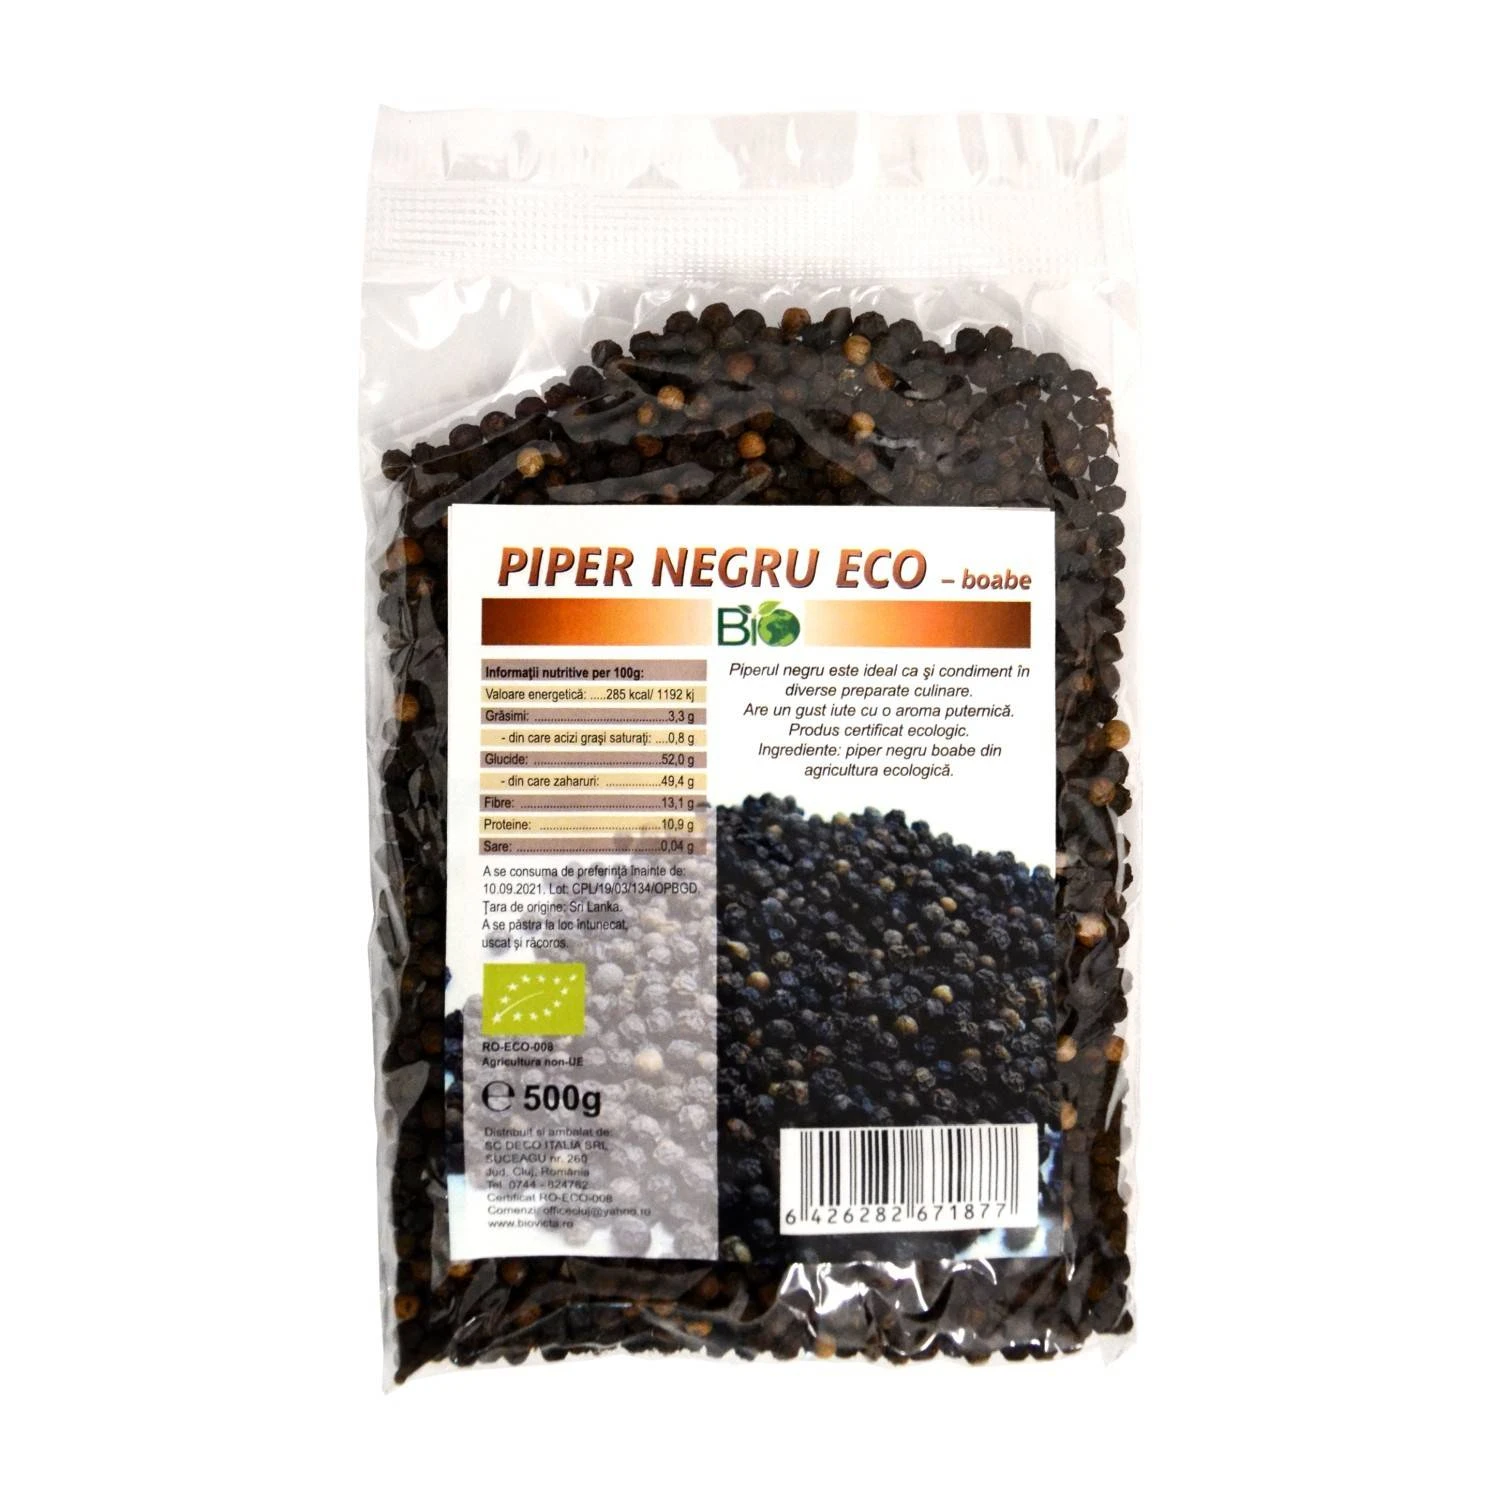 Piper negru boabe, eco-bio, 500g - deco italia